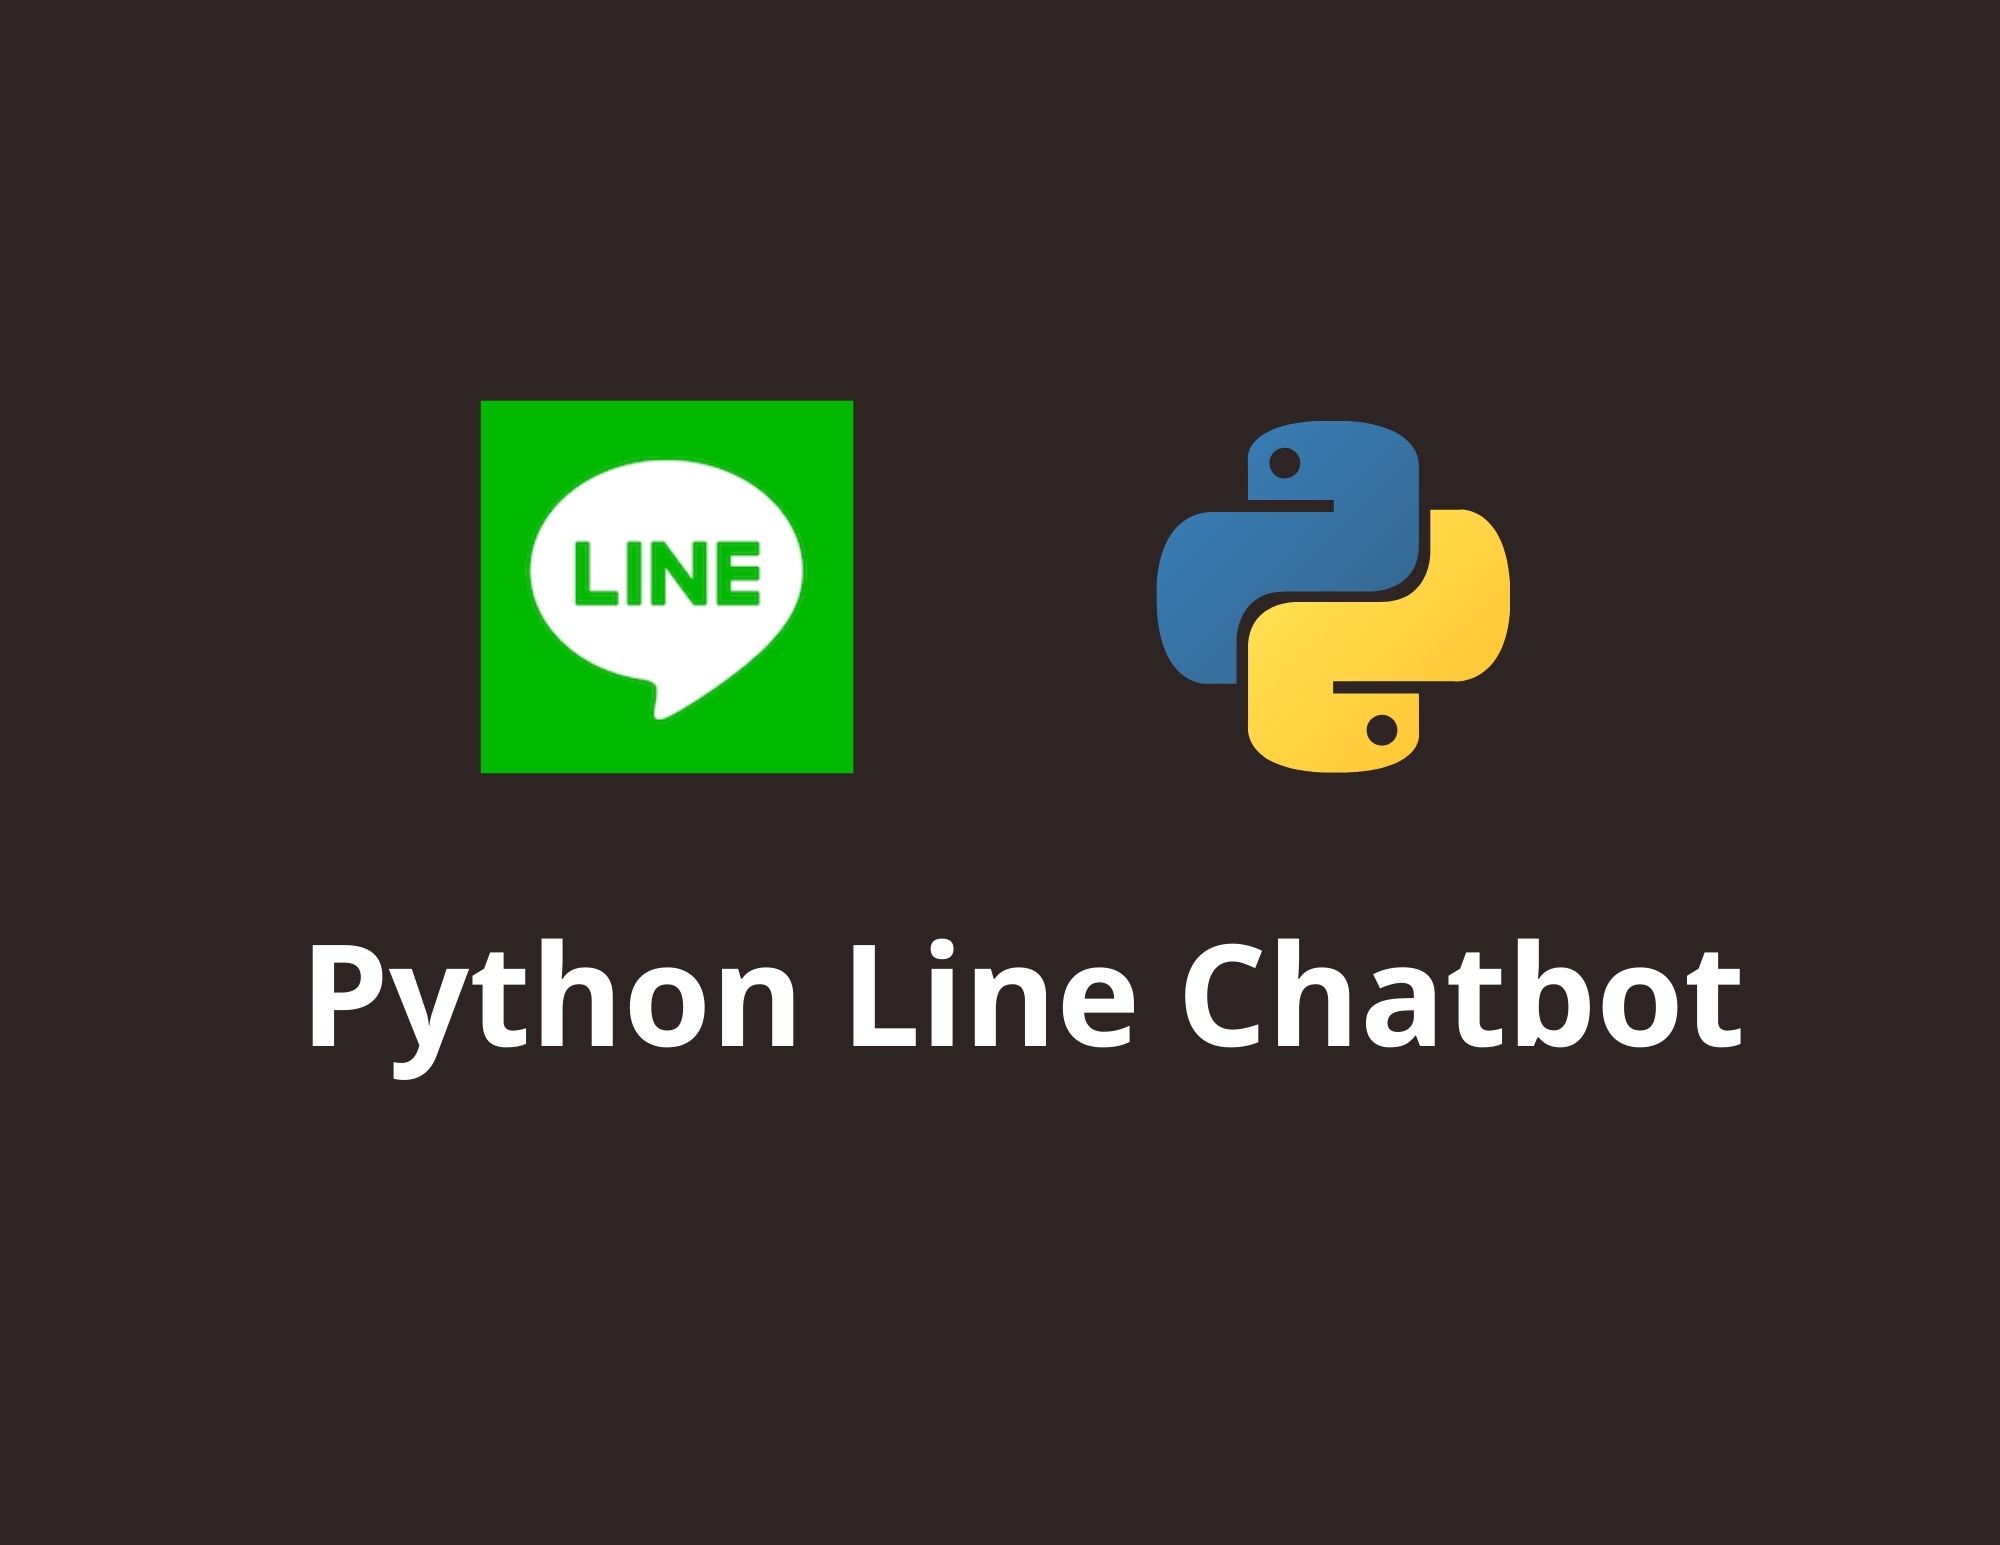 สร้าง Python Line Chatbot ด้วย Messages ตอบกลับรูปแบบต่าง ๆ